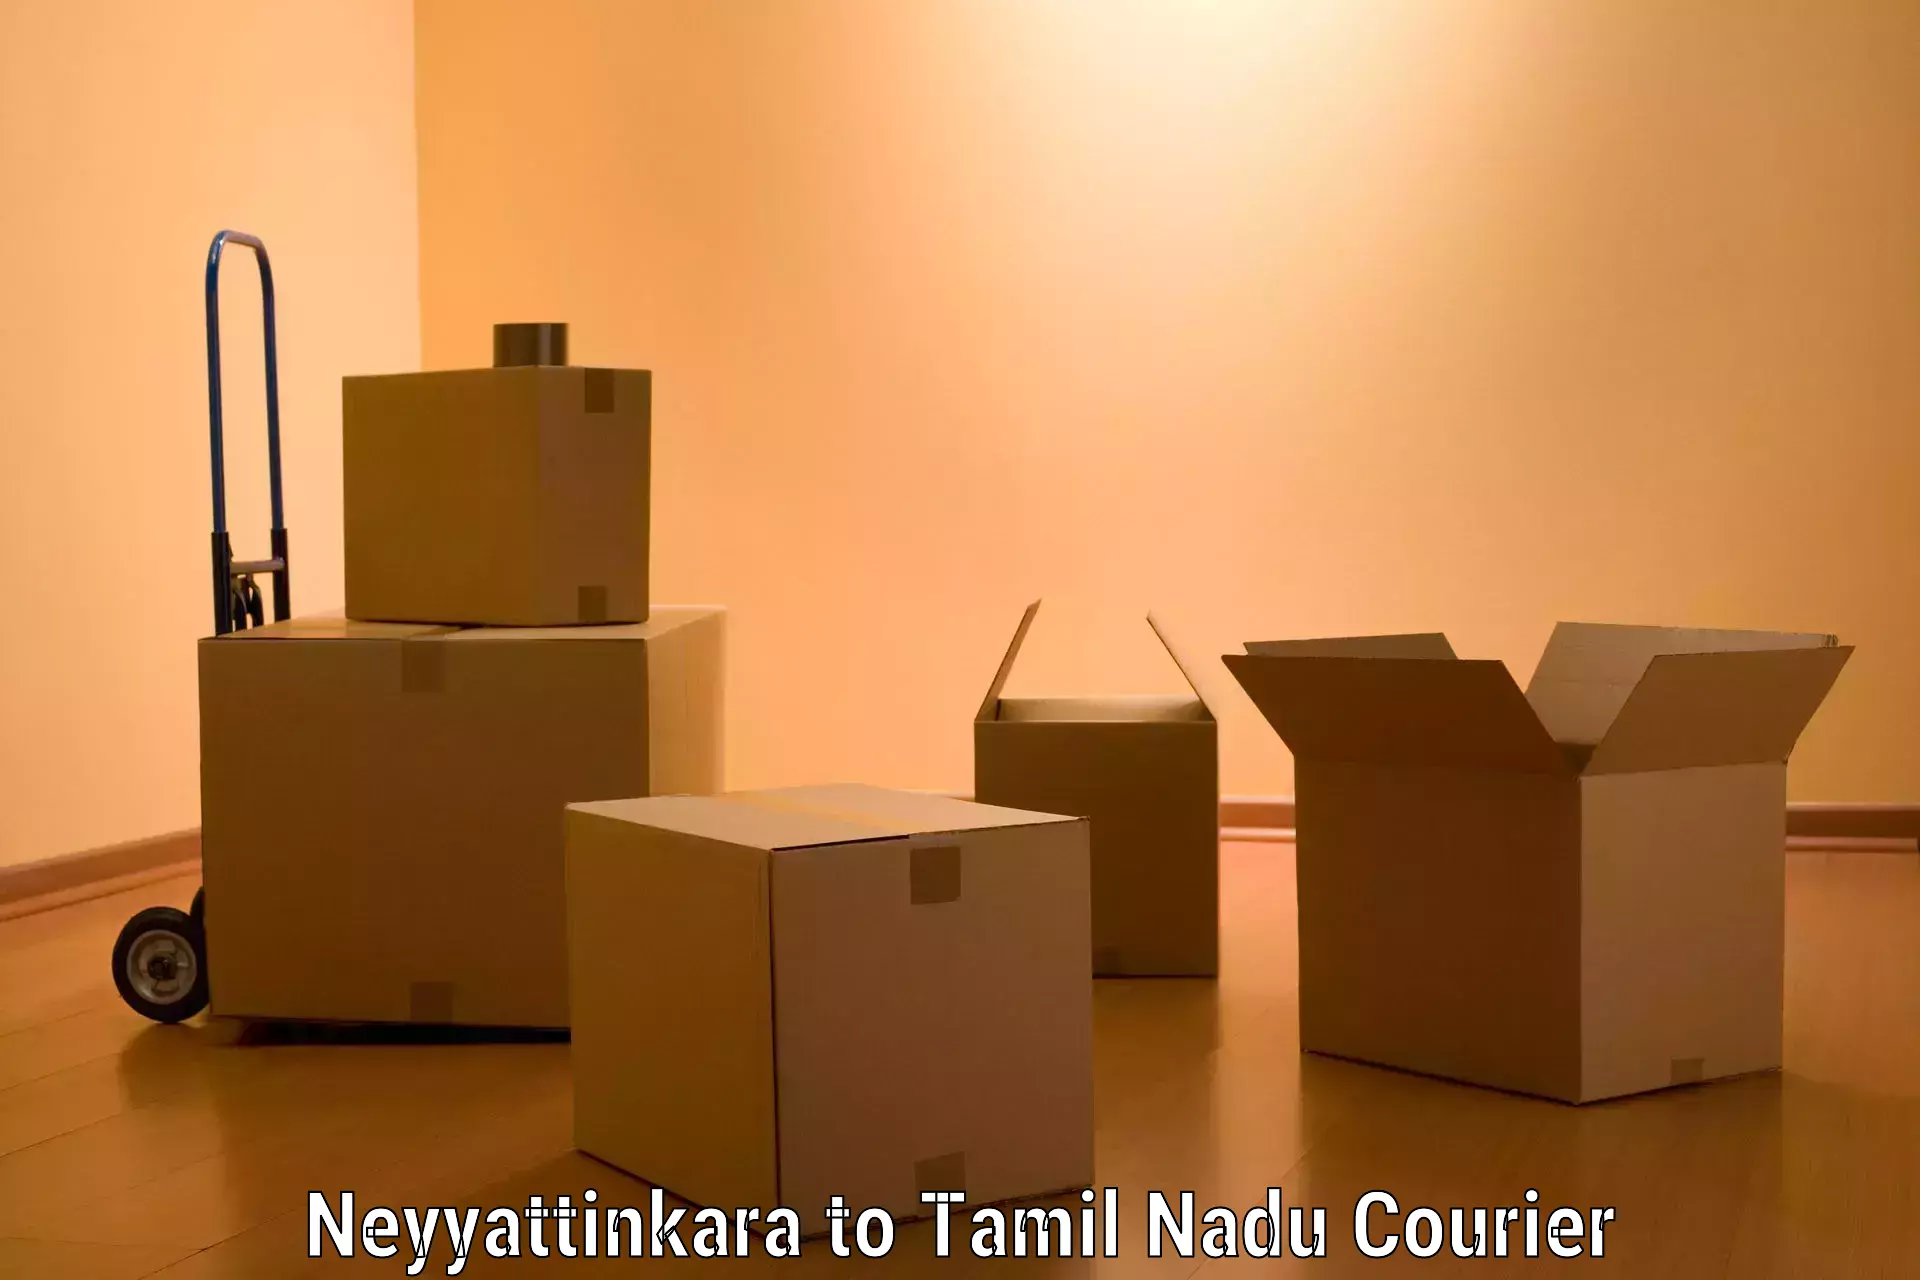 Moving and packing experts Neyyattinkara to Vickramasingapuram